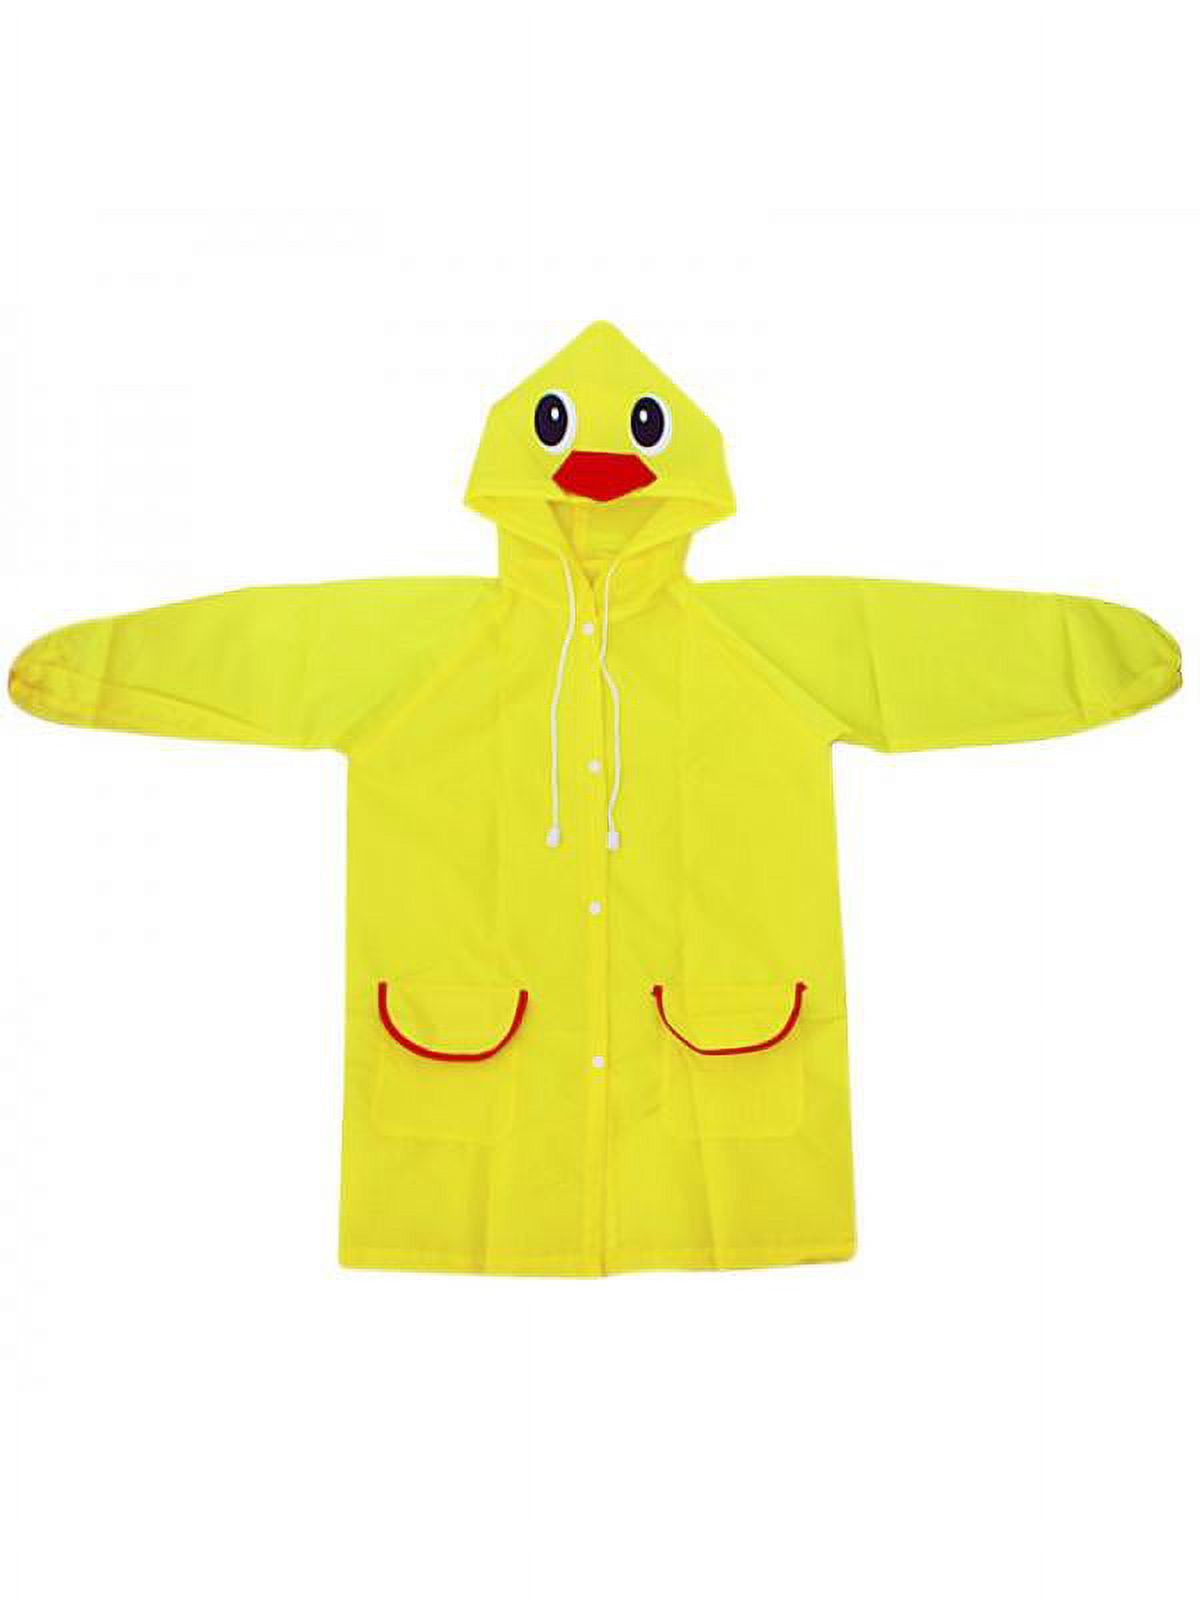 Girl Baby Kid Waterproof Hooded Coat Jacket Outwear Raincoat Hoodies - image 1 of 3